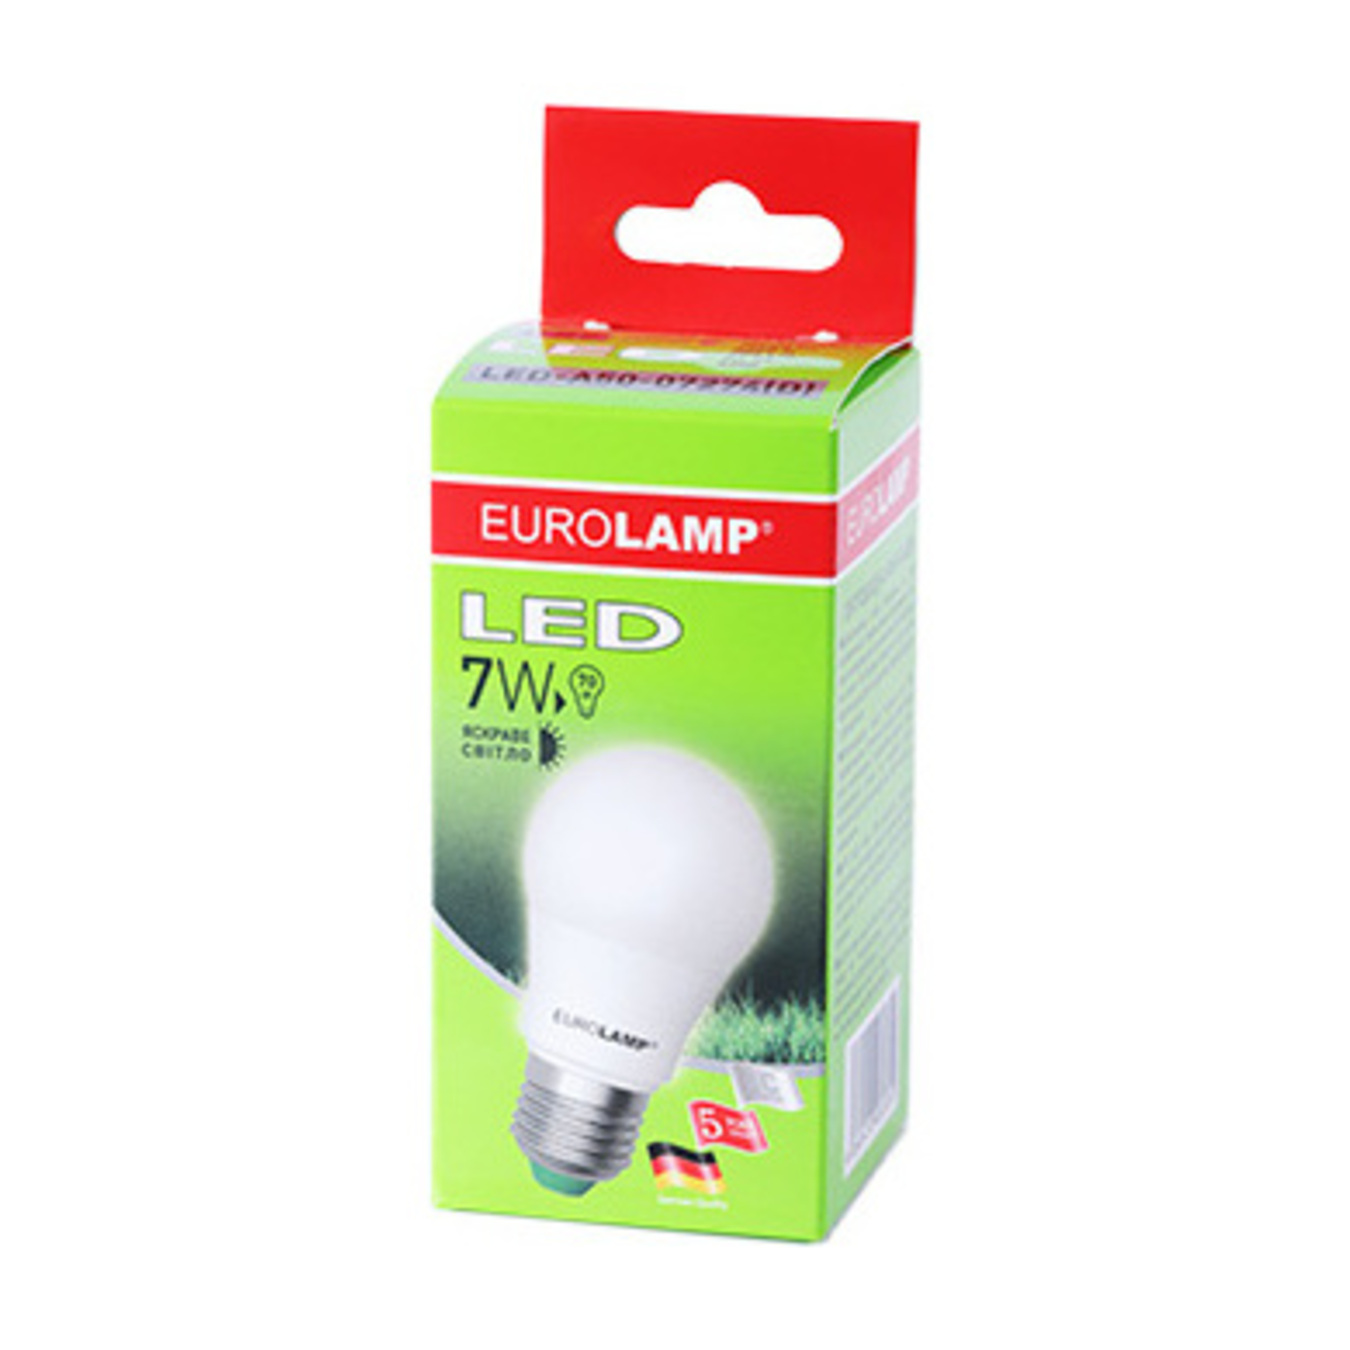 Eurolamp LED Lamp E27 7W 4000K